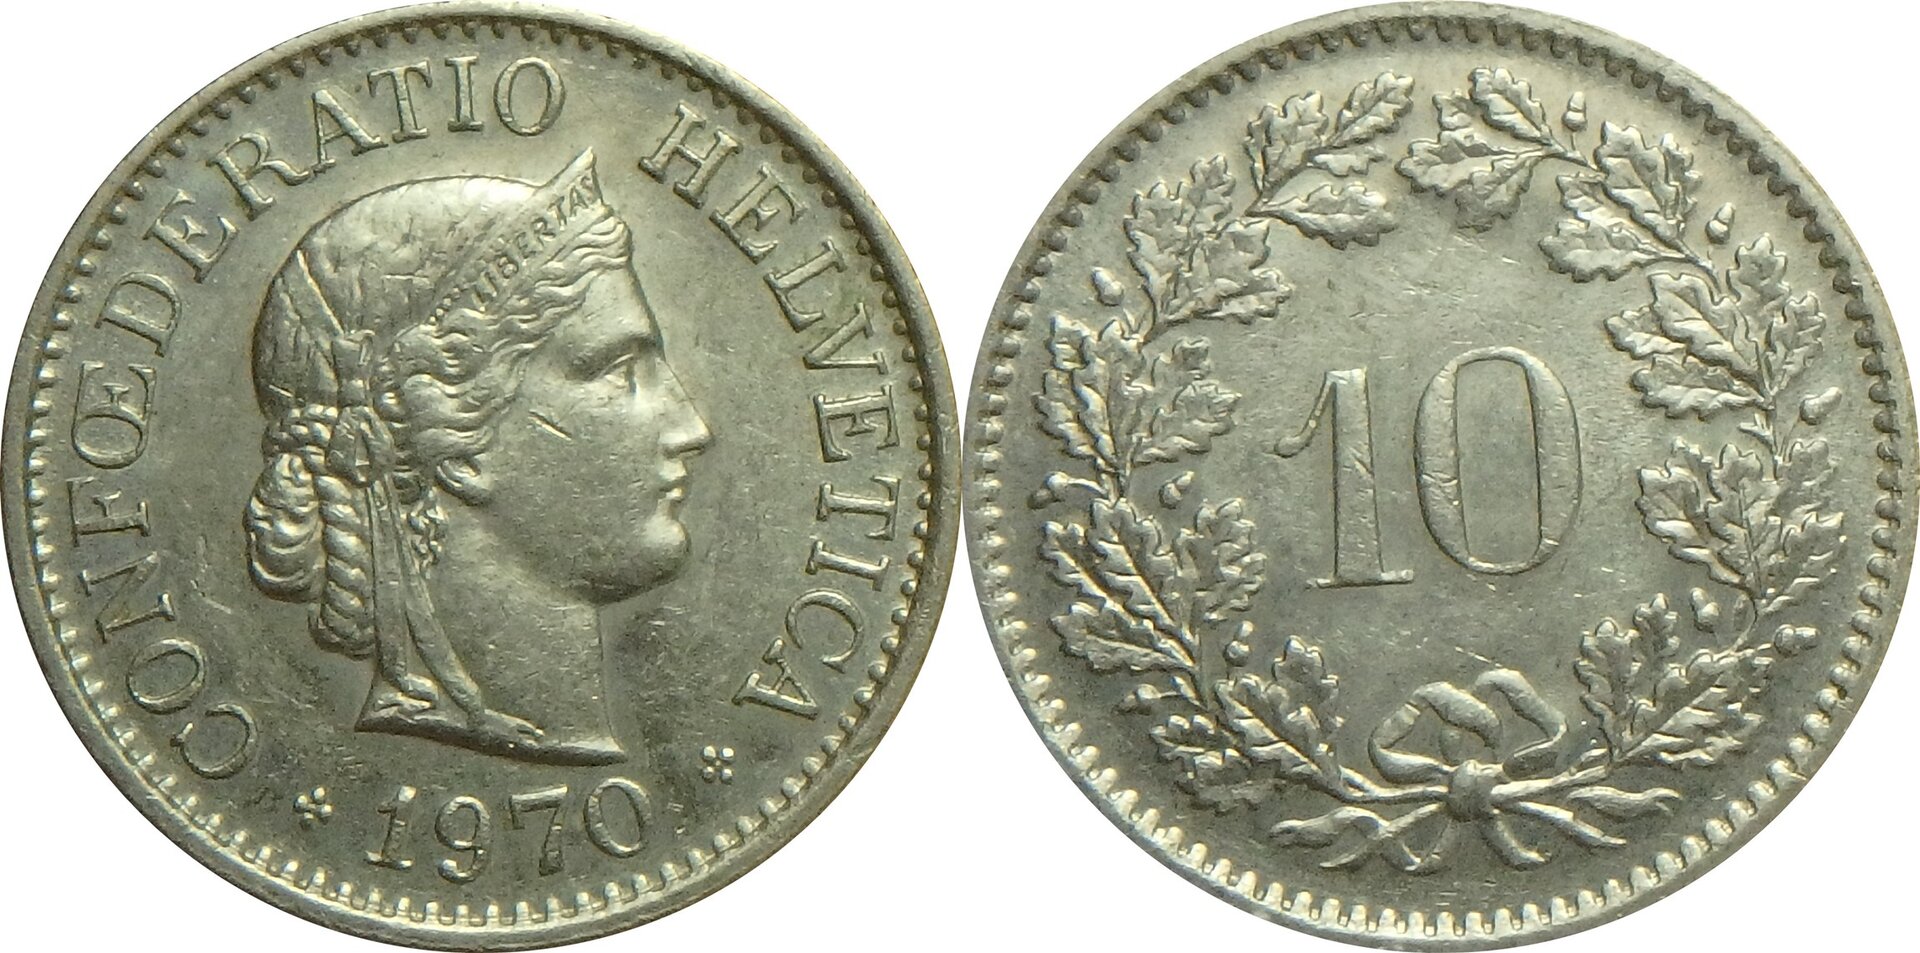 1970 CH 10 r.jpg